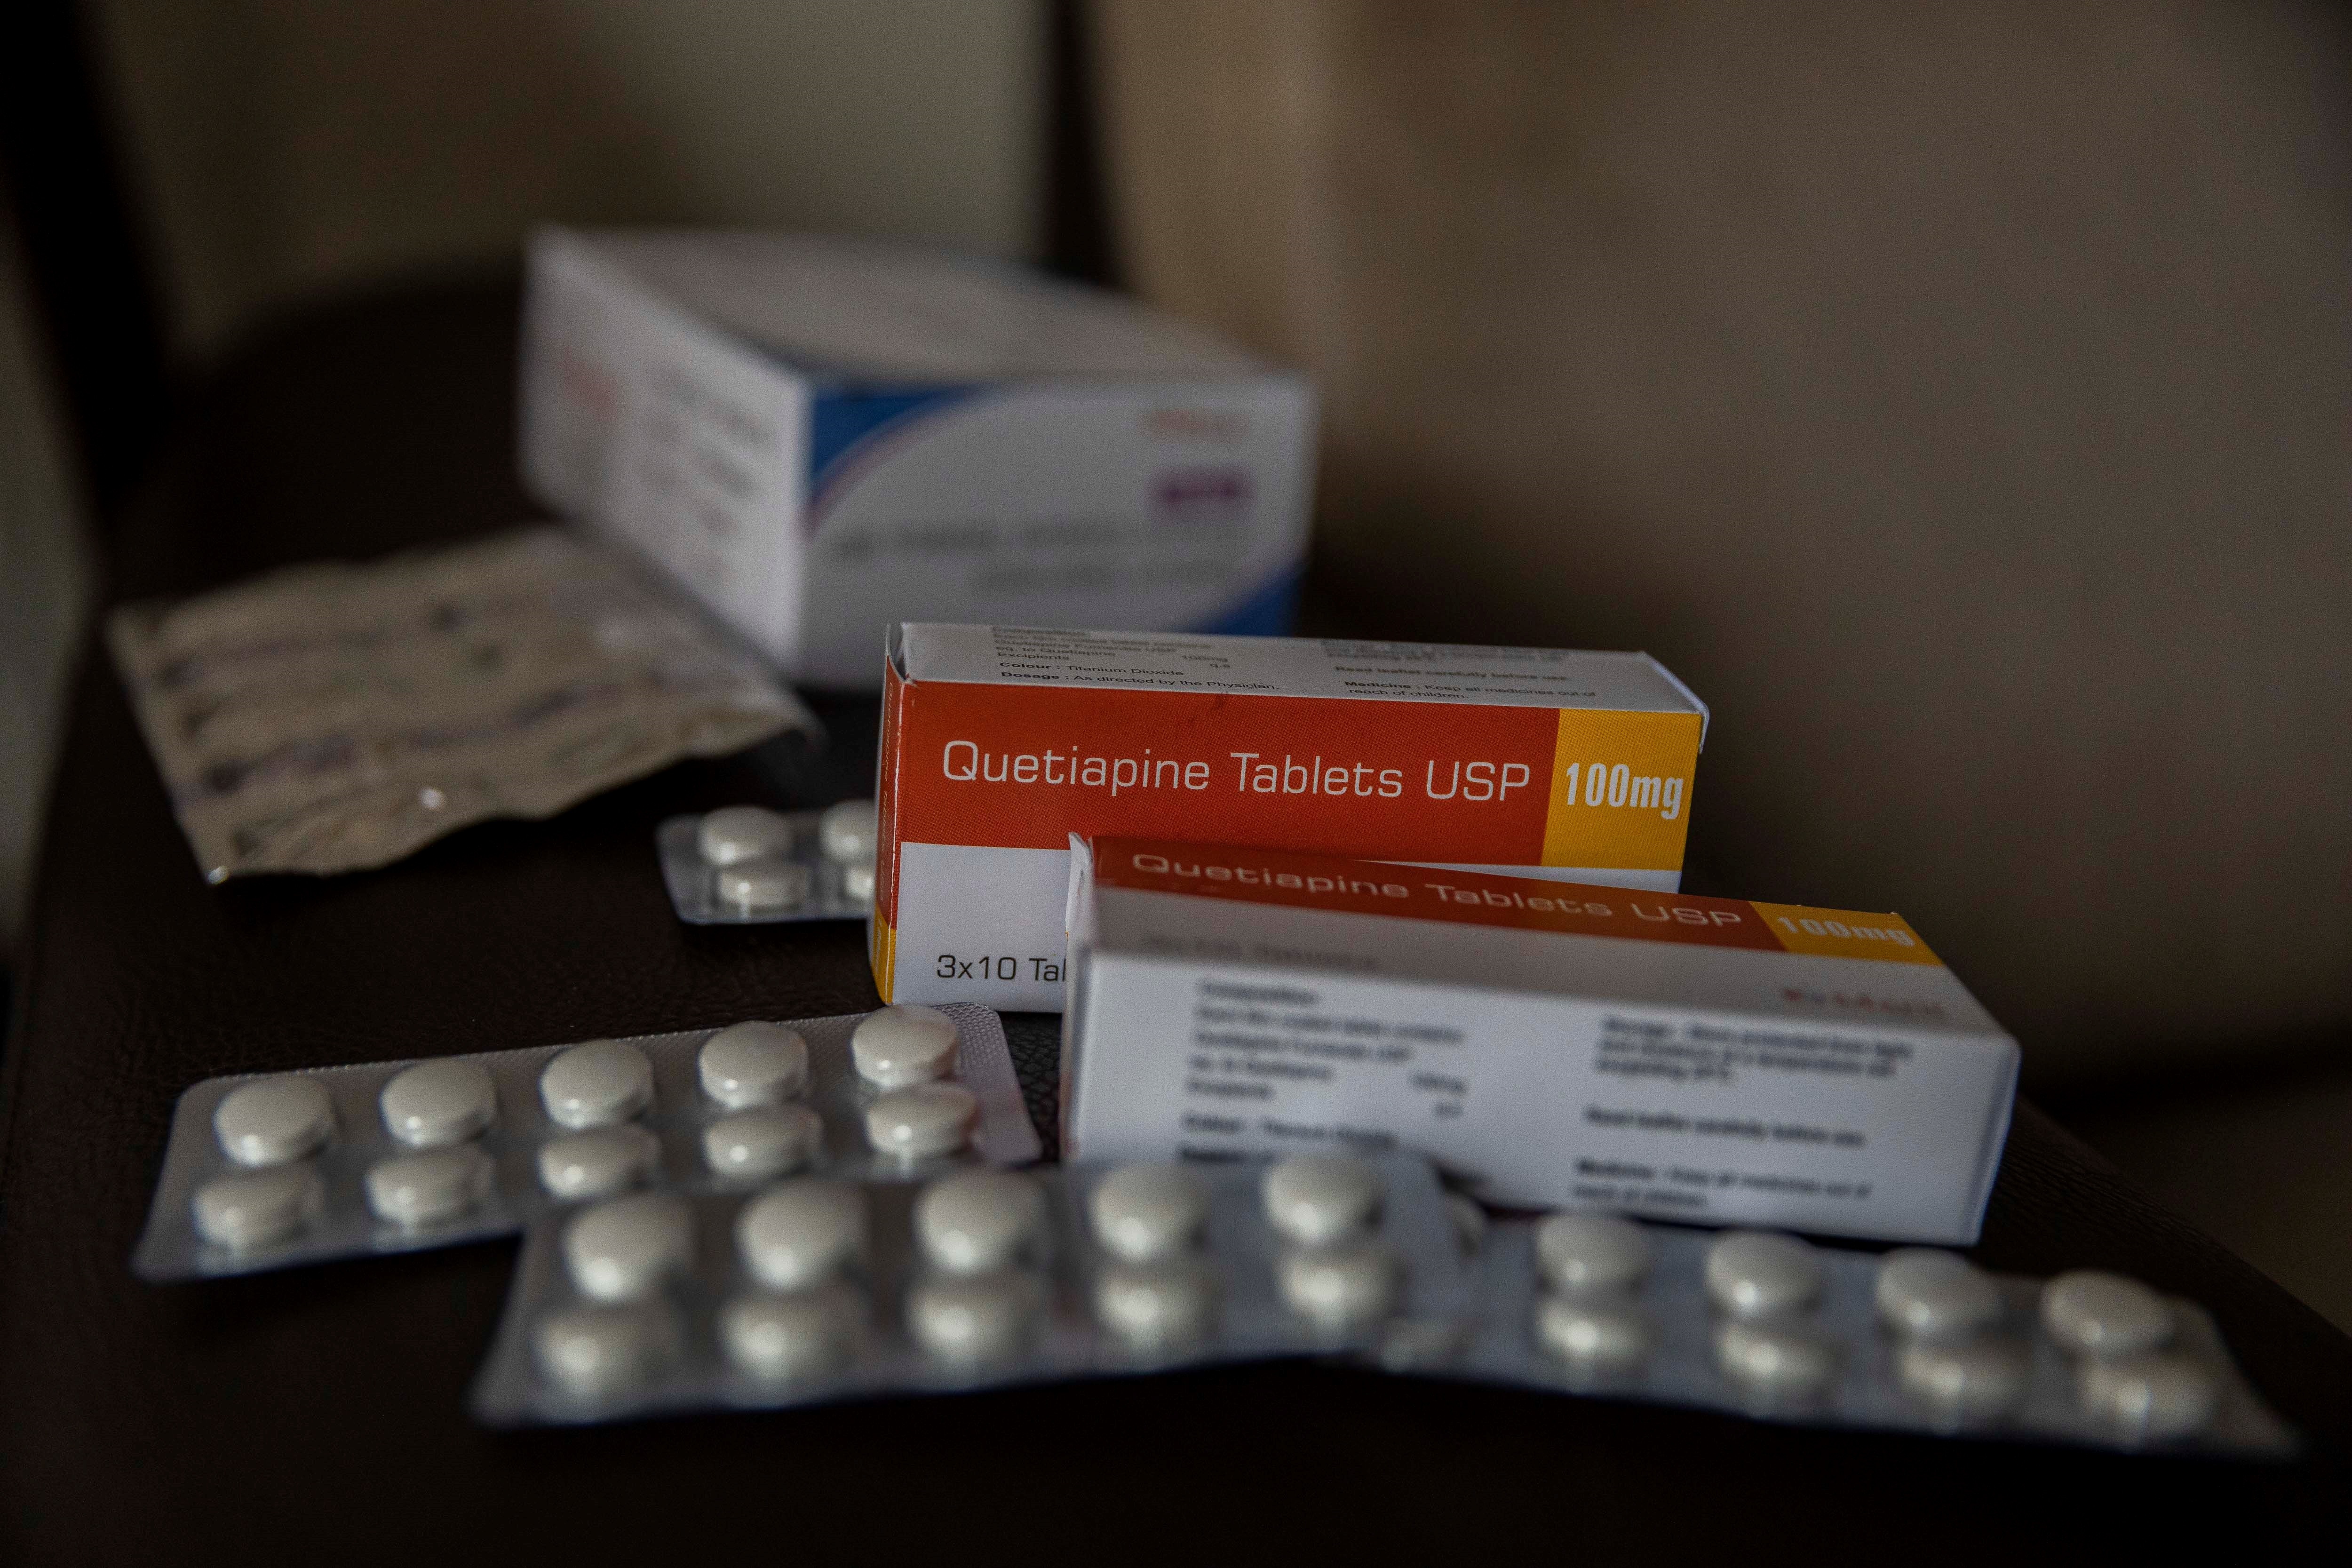 Venta ilegal de medicinas enciende las alarmas en farmacéuticos venezolanos